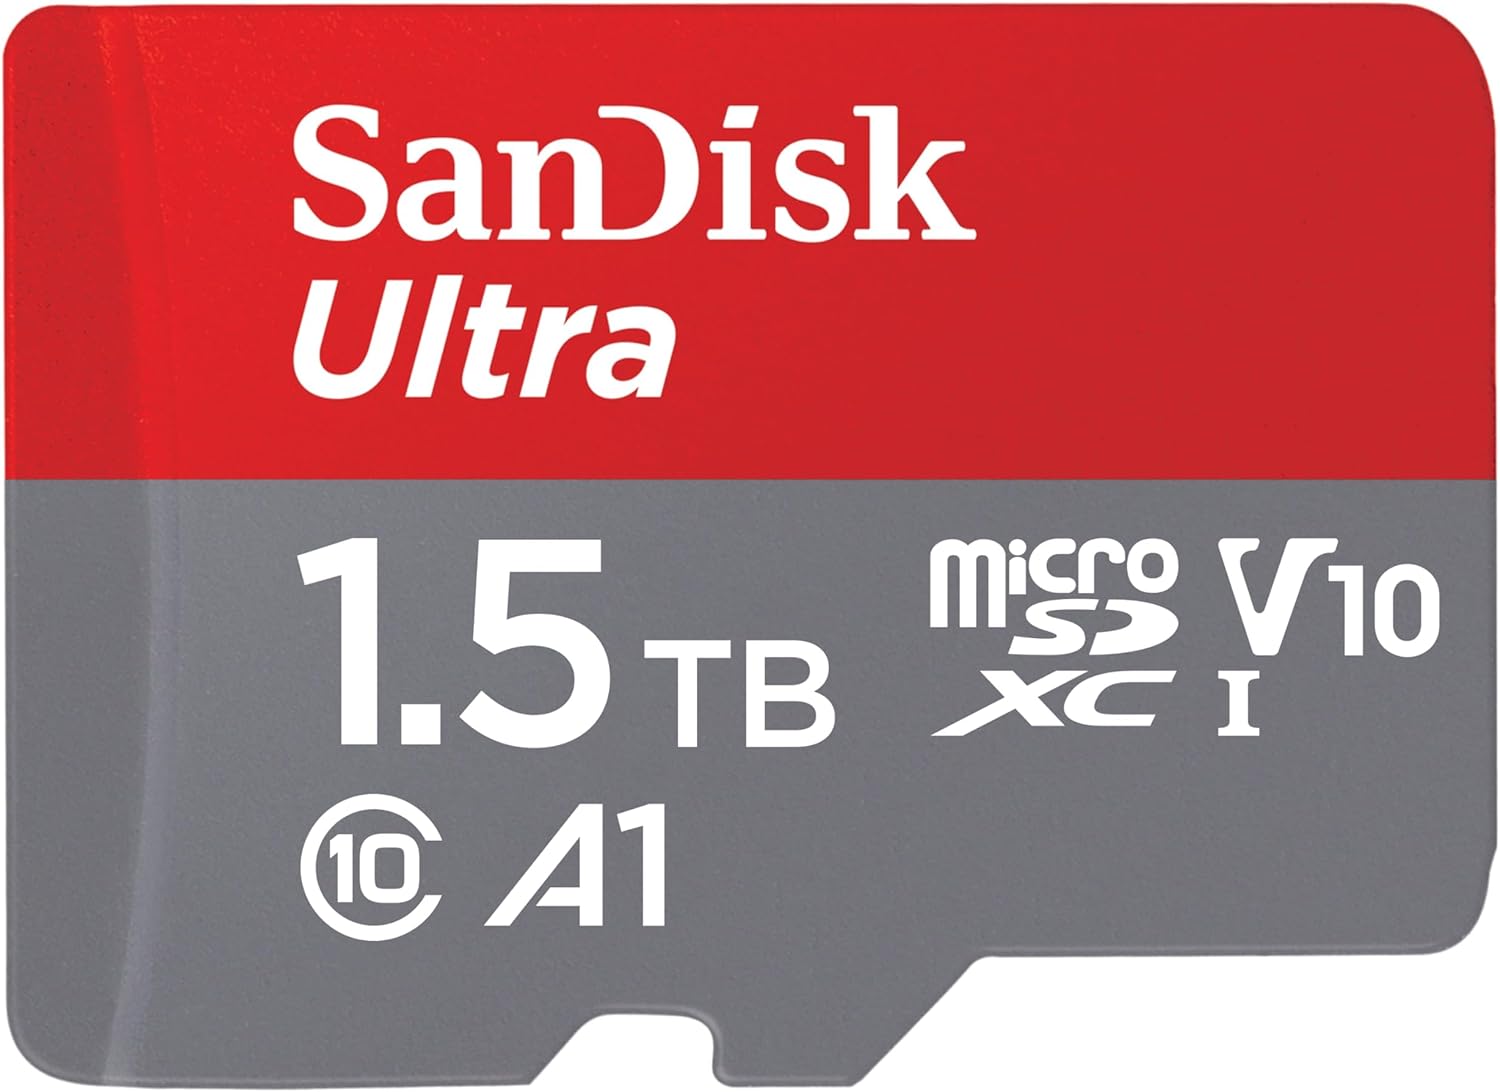 SanDisk lance sa carte Micro SD de 1,5 To compatible Nintendo